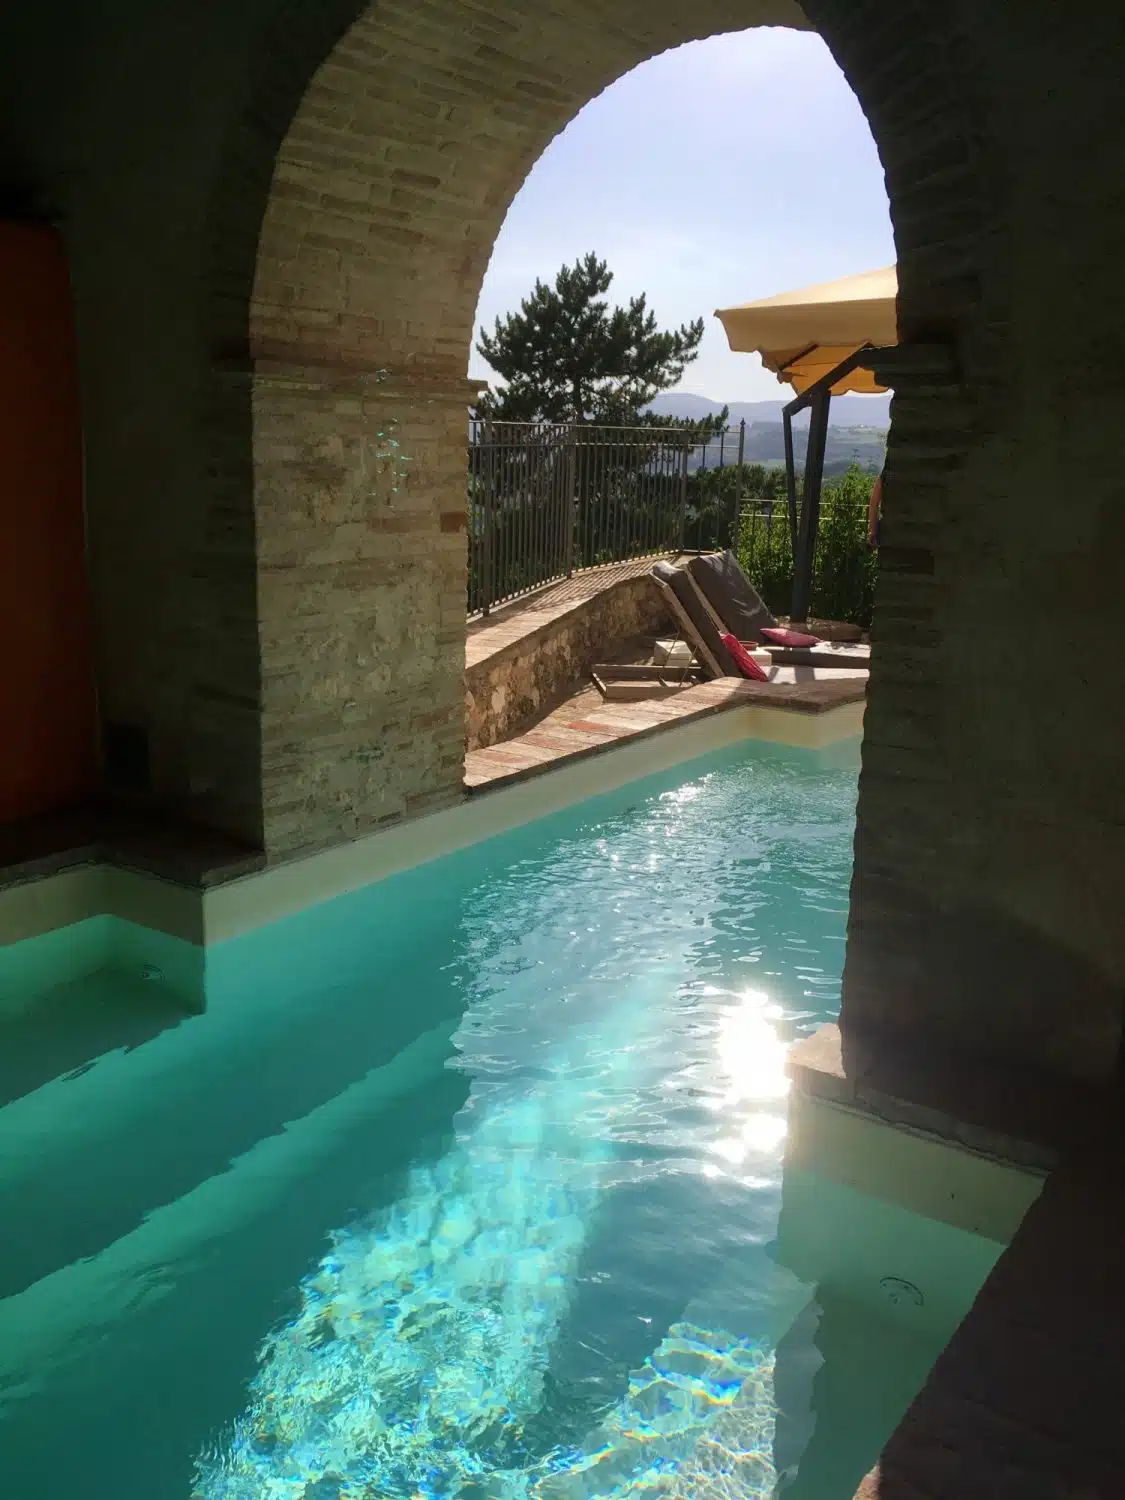 A pool with a view at Santi Terzi